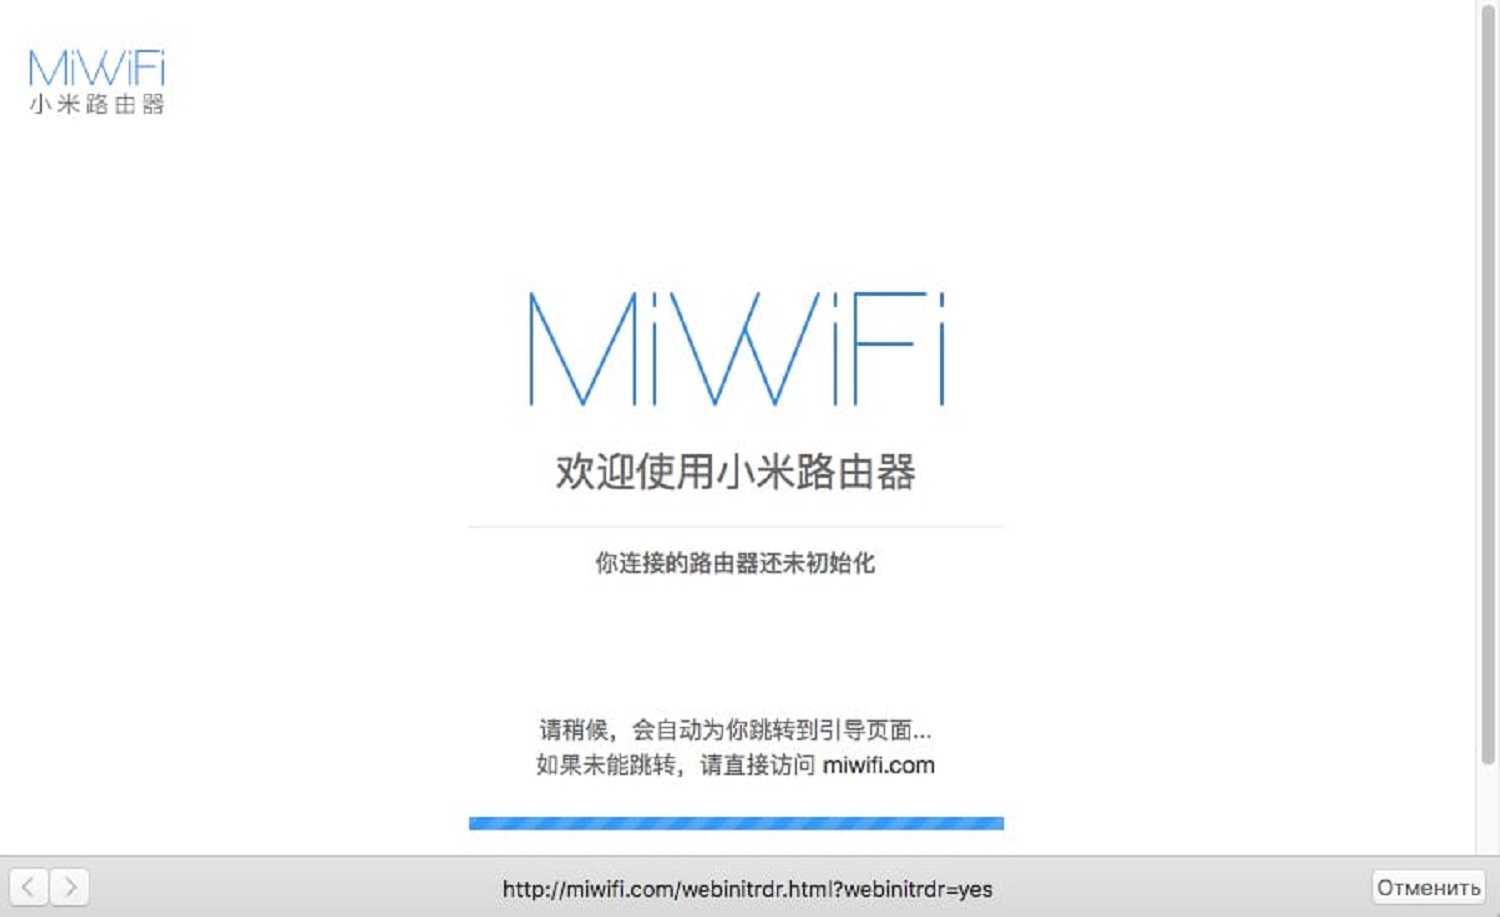 Обзор сетевого usb адаптера xiaomi mi wifi adapter - как подключить к компьютеру или ноутбуку и настроить интернет